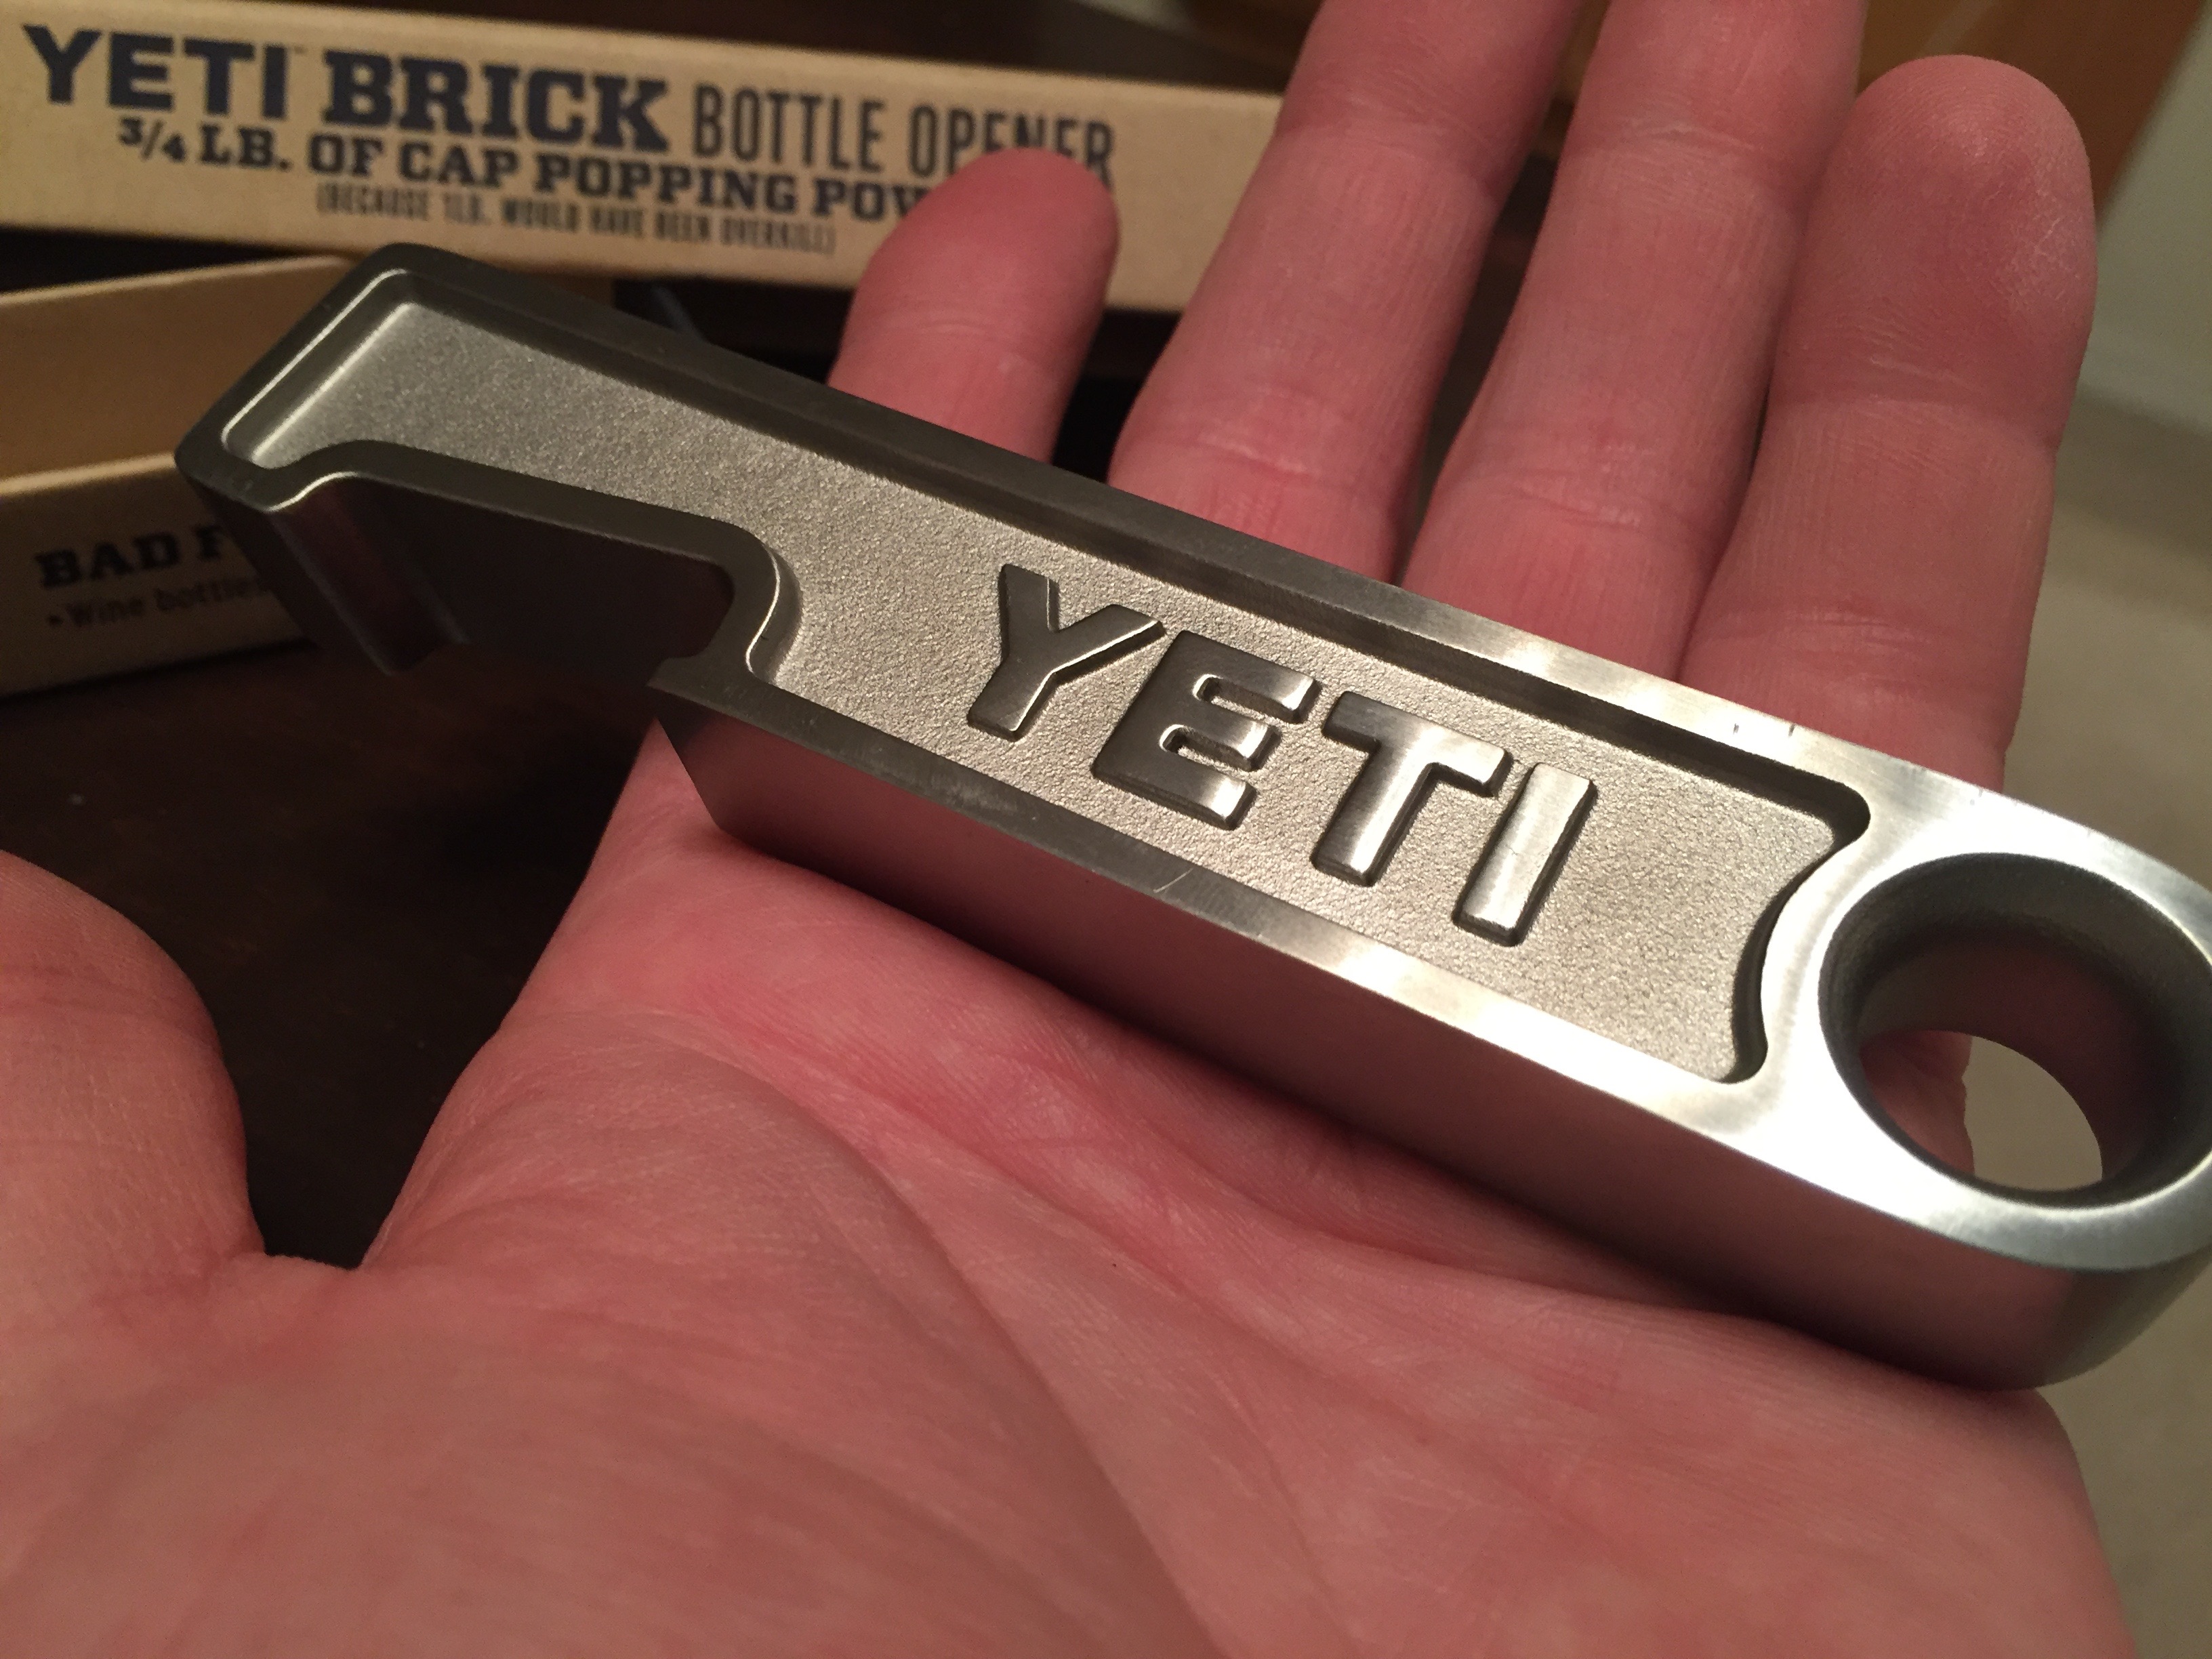 Yeti's New “Brick” Bottle Opener